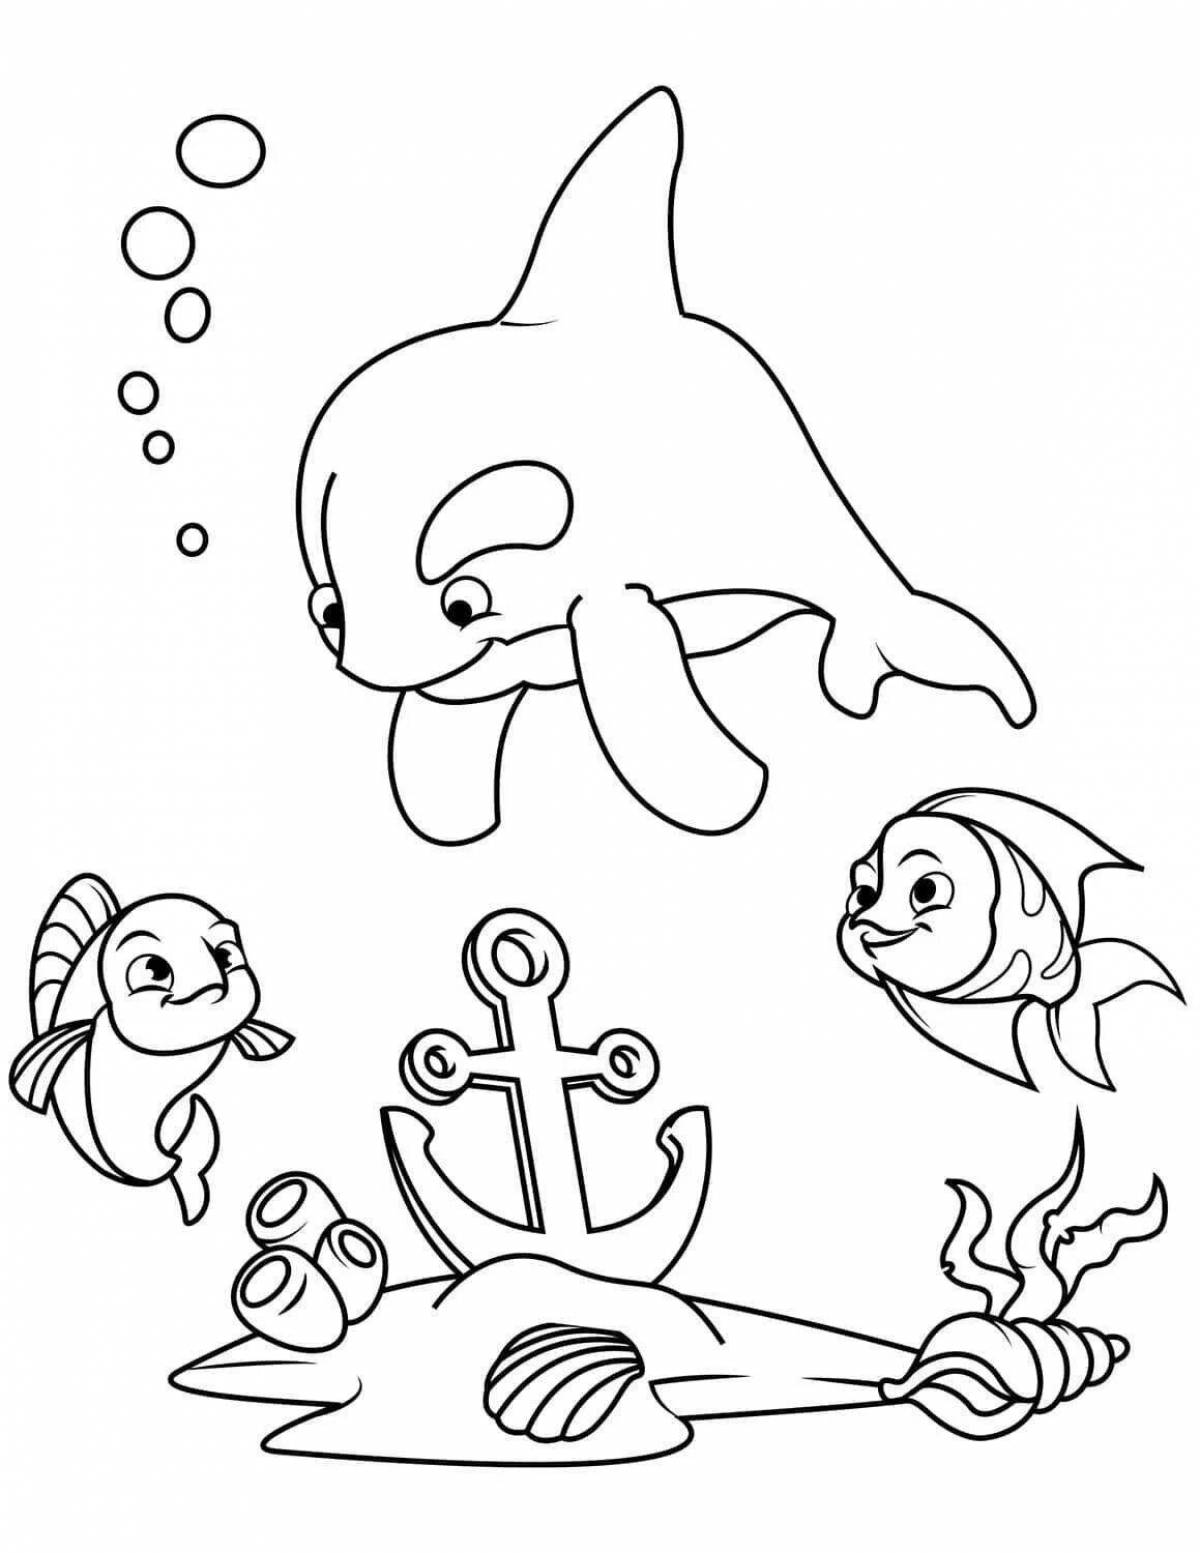 Adorable sea life coloring book